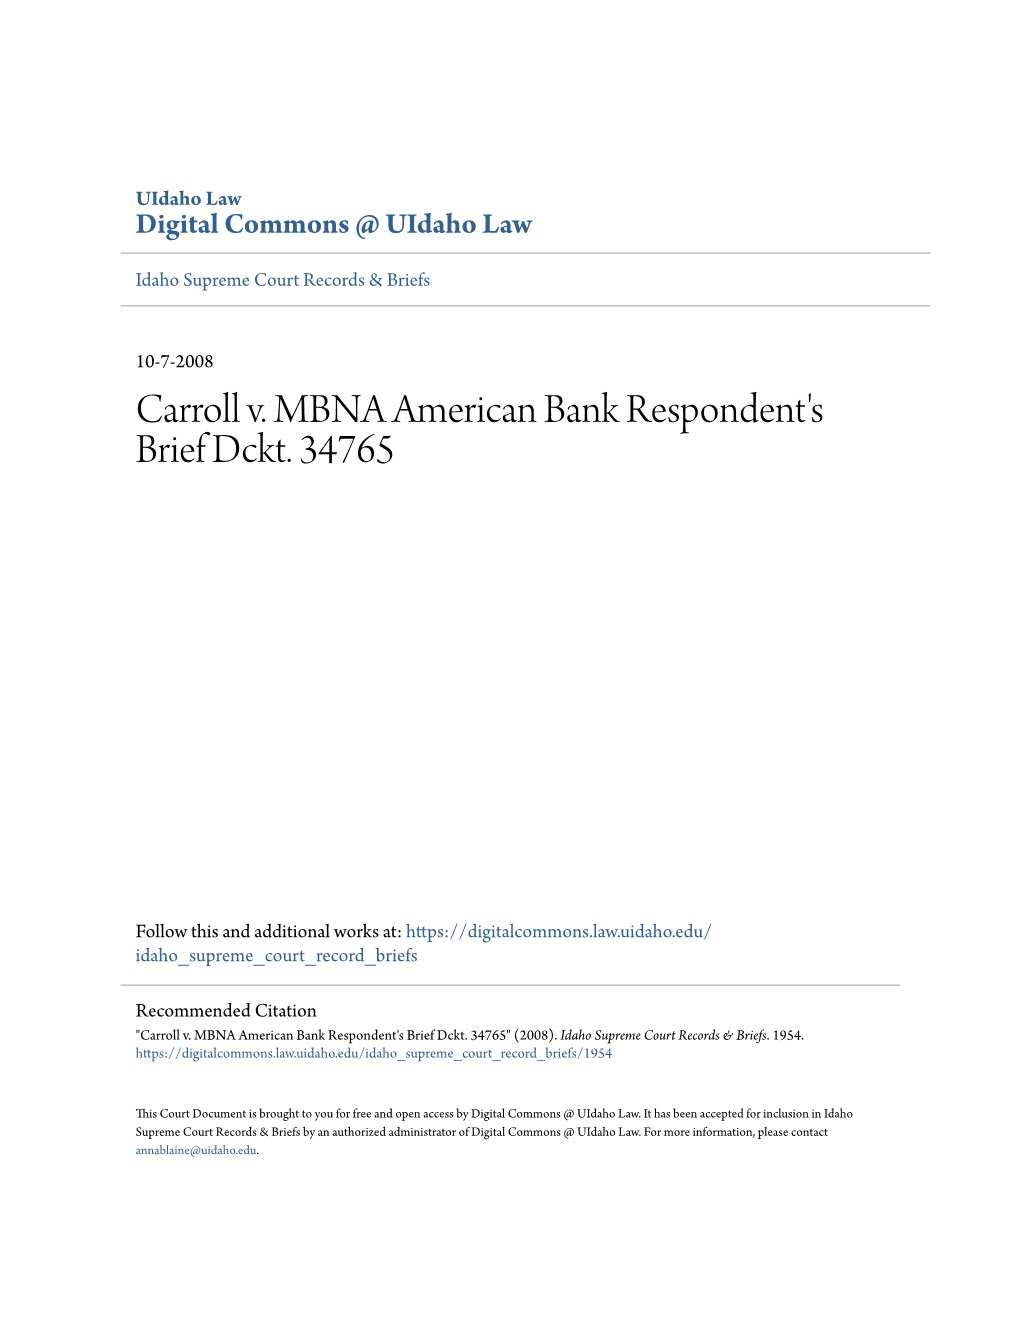 Carroll V. MBNA American Bank Respondent's Brief Dckt. 34765